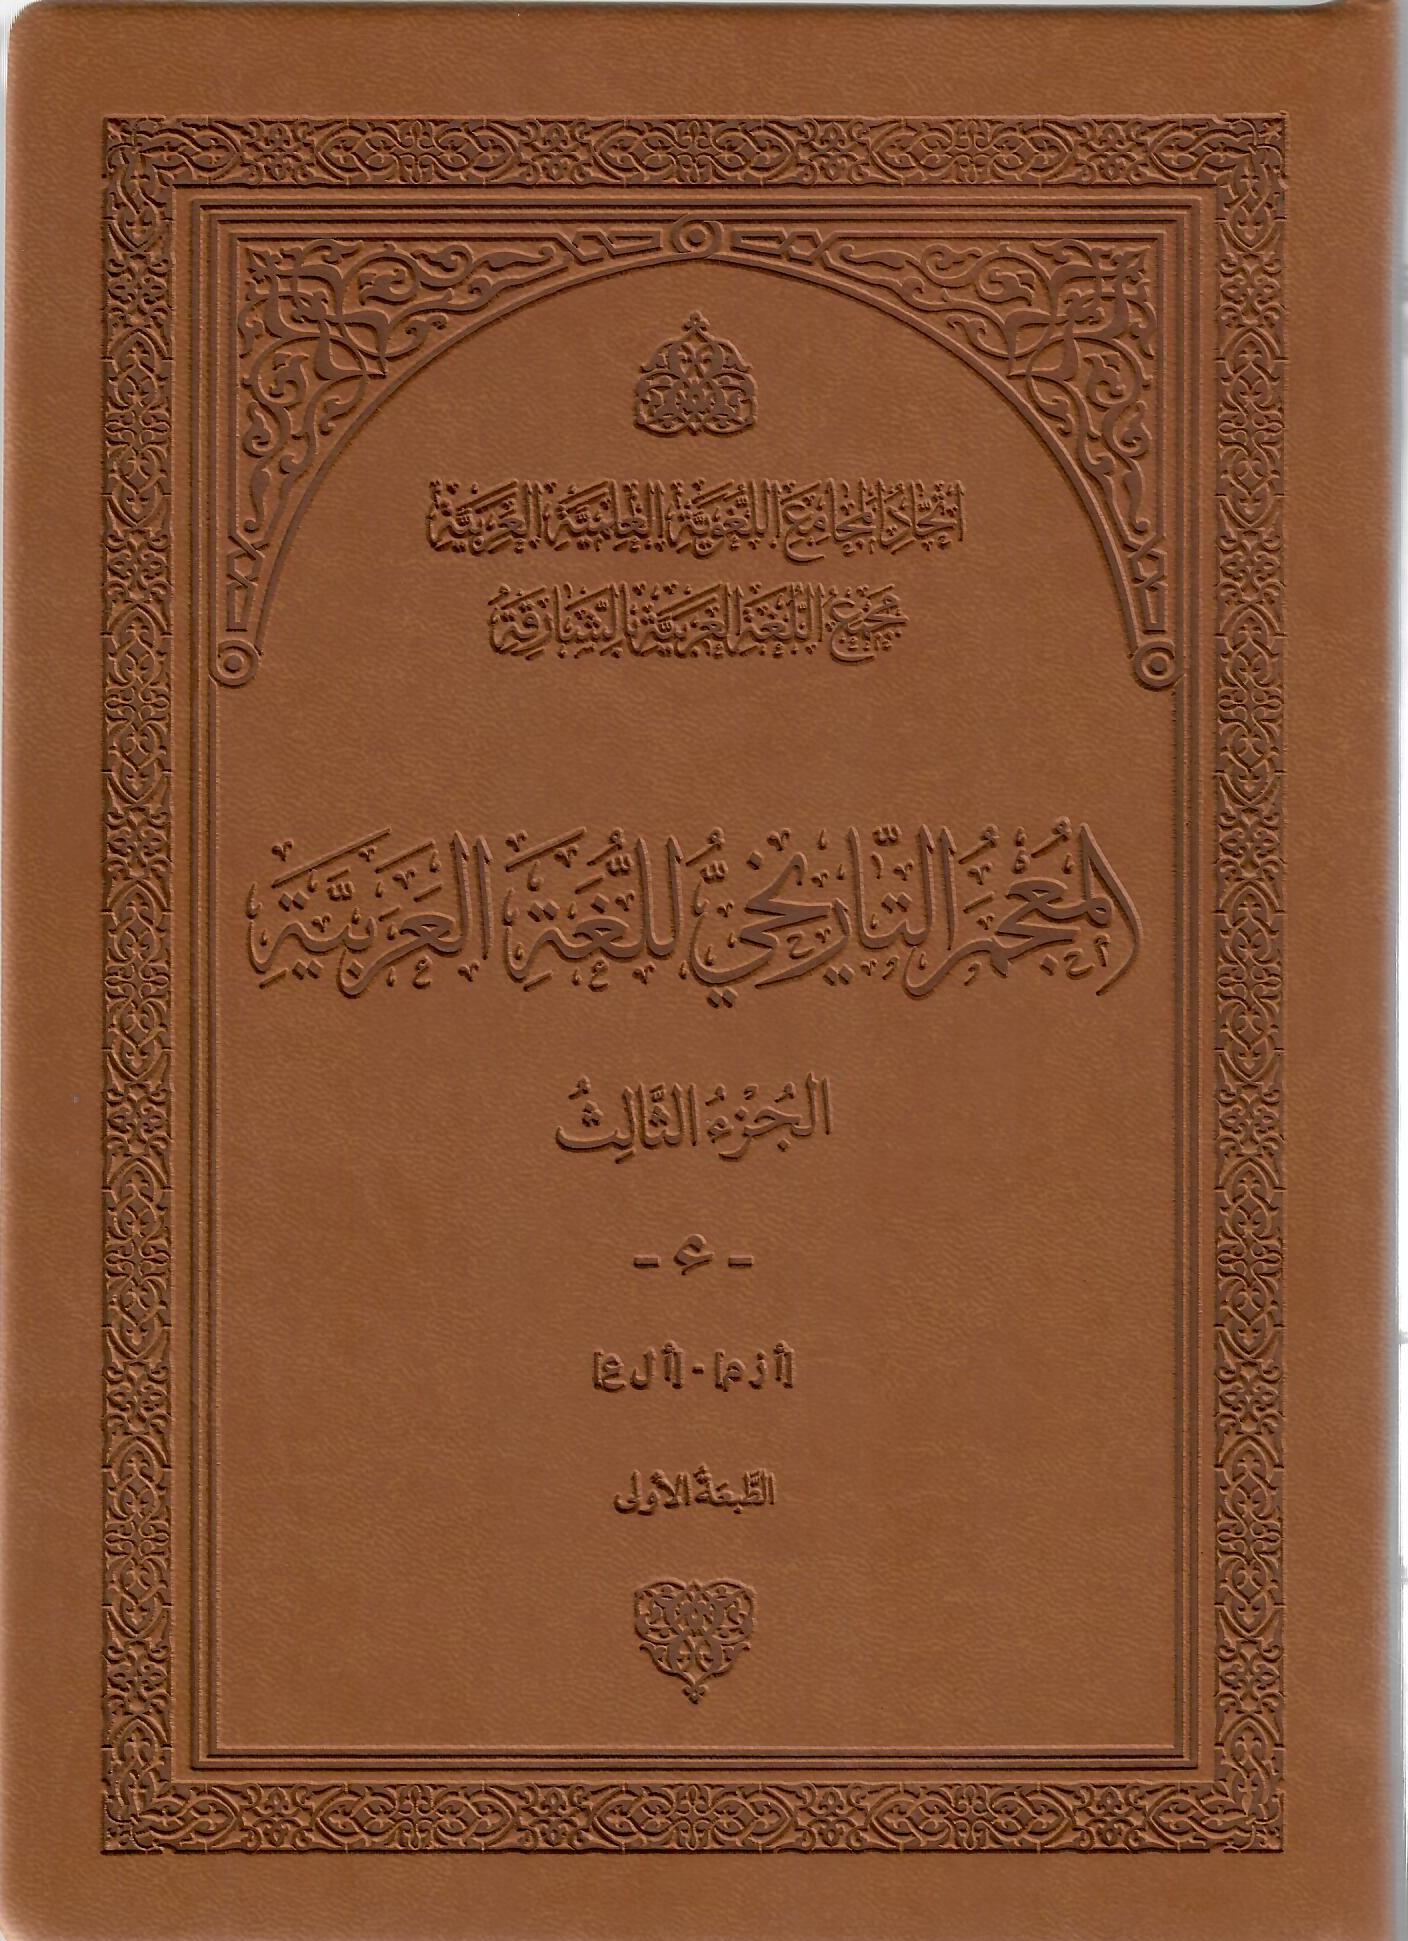 المعجم التاريخي للغة العربية الجزء الثالث